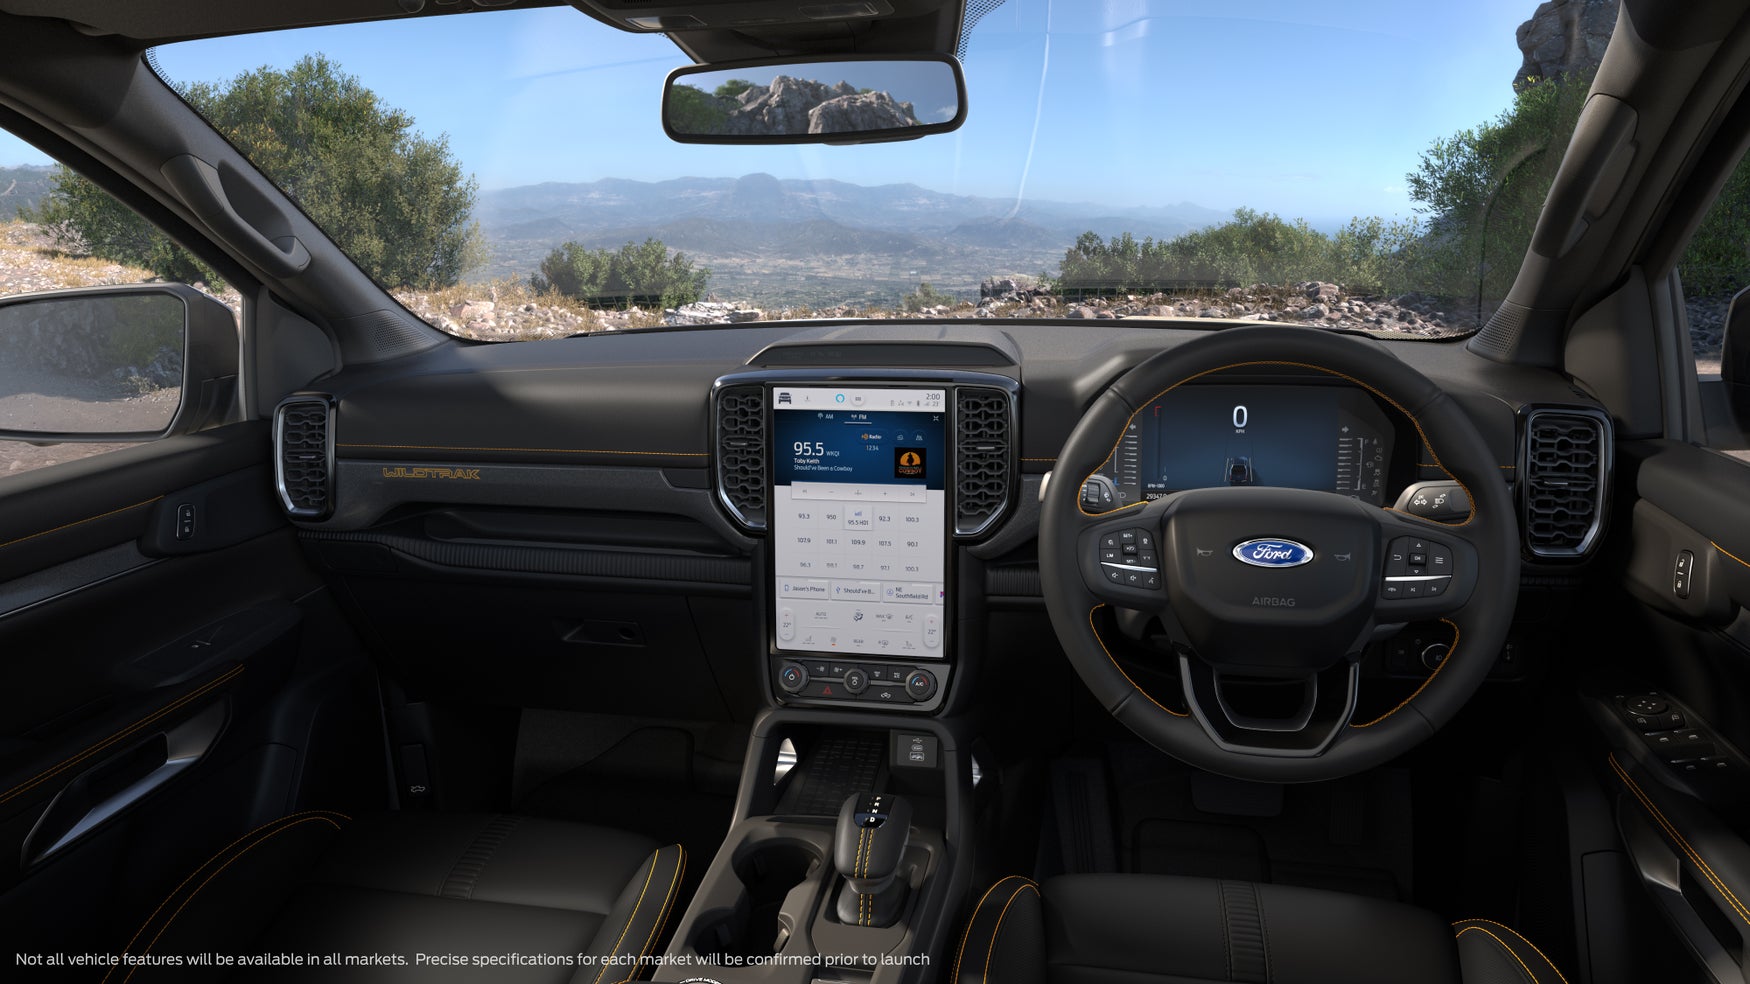 New 2022 Ford Ranger interior